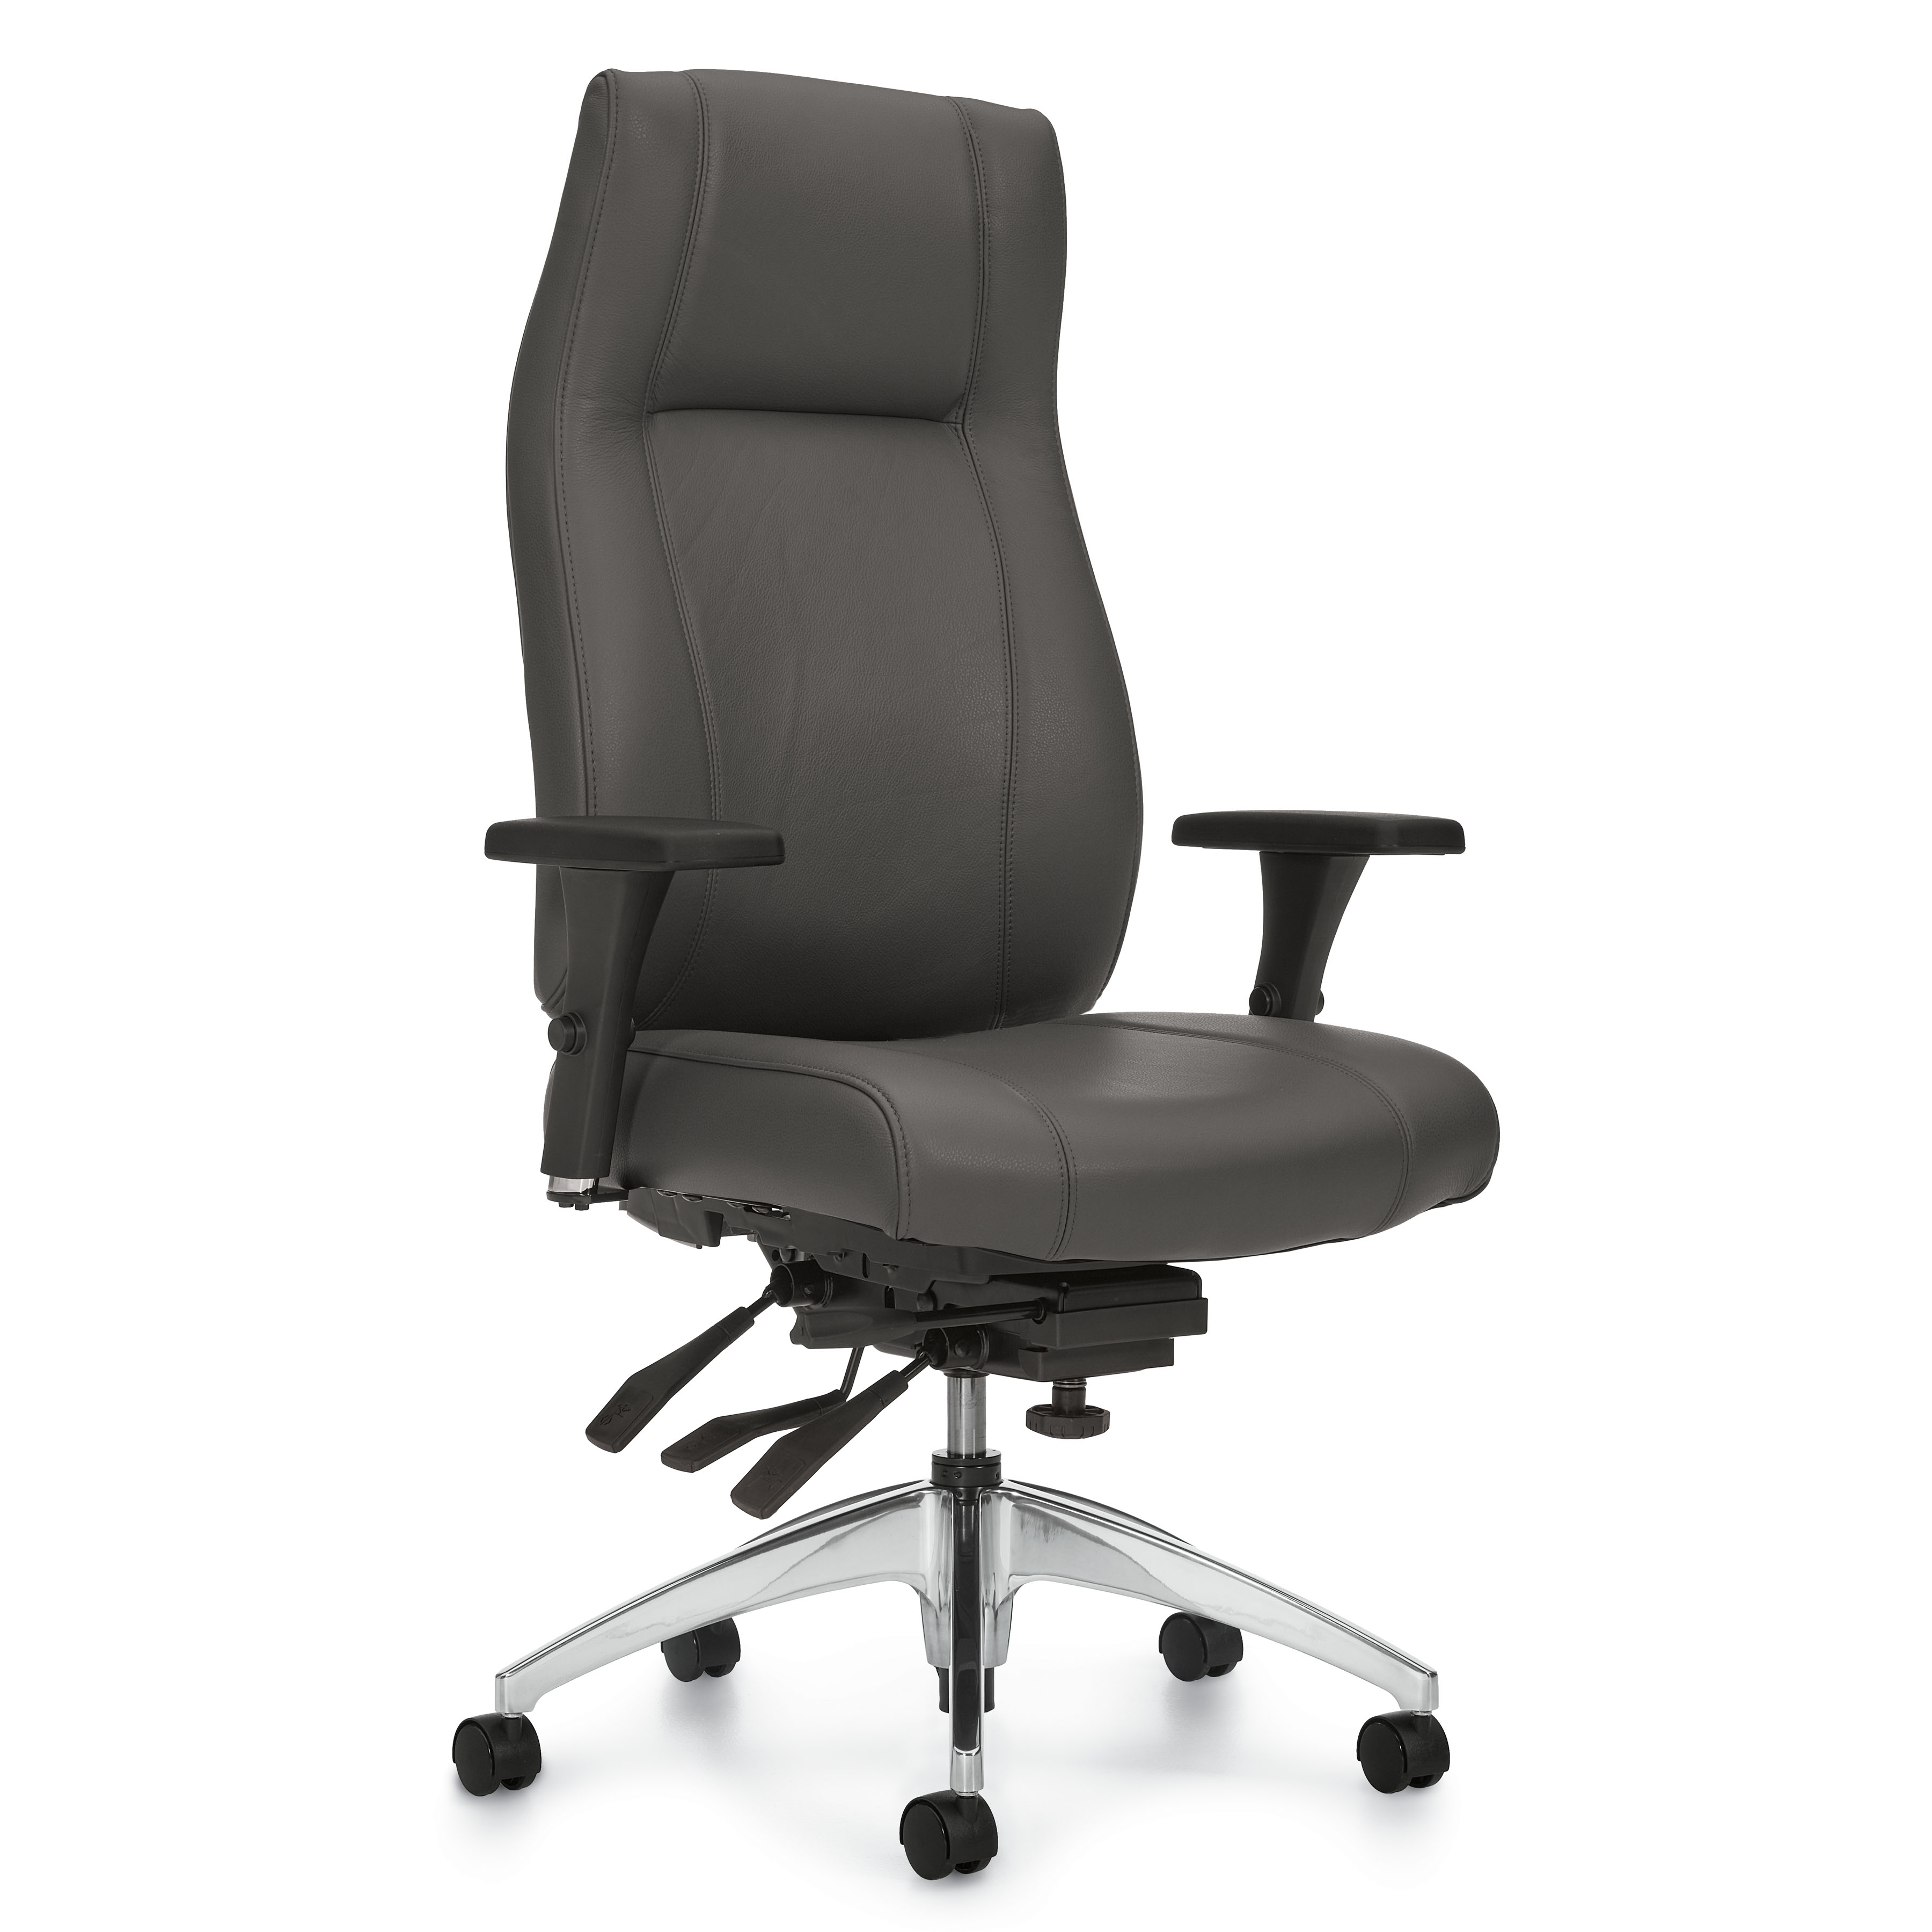 Triumph - Ergonomic Task Chair - Task Chair - Office Task Chair - Lumbar support for task chair - High Back Multi-Tilter